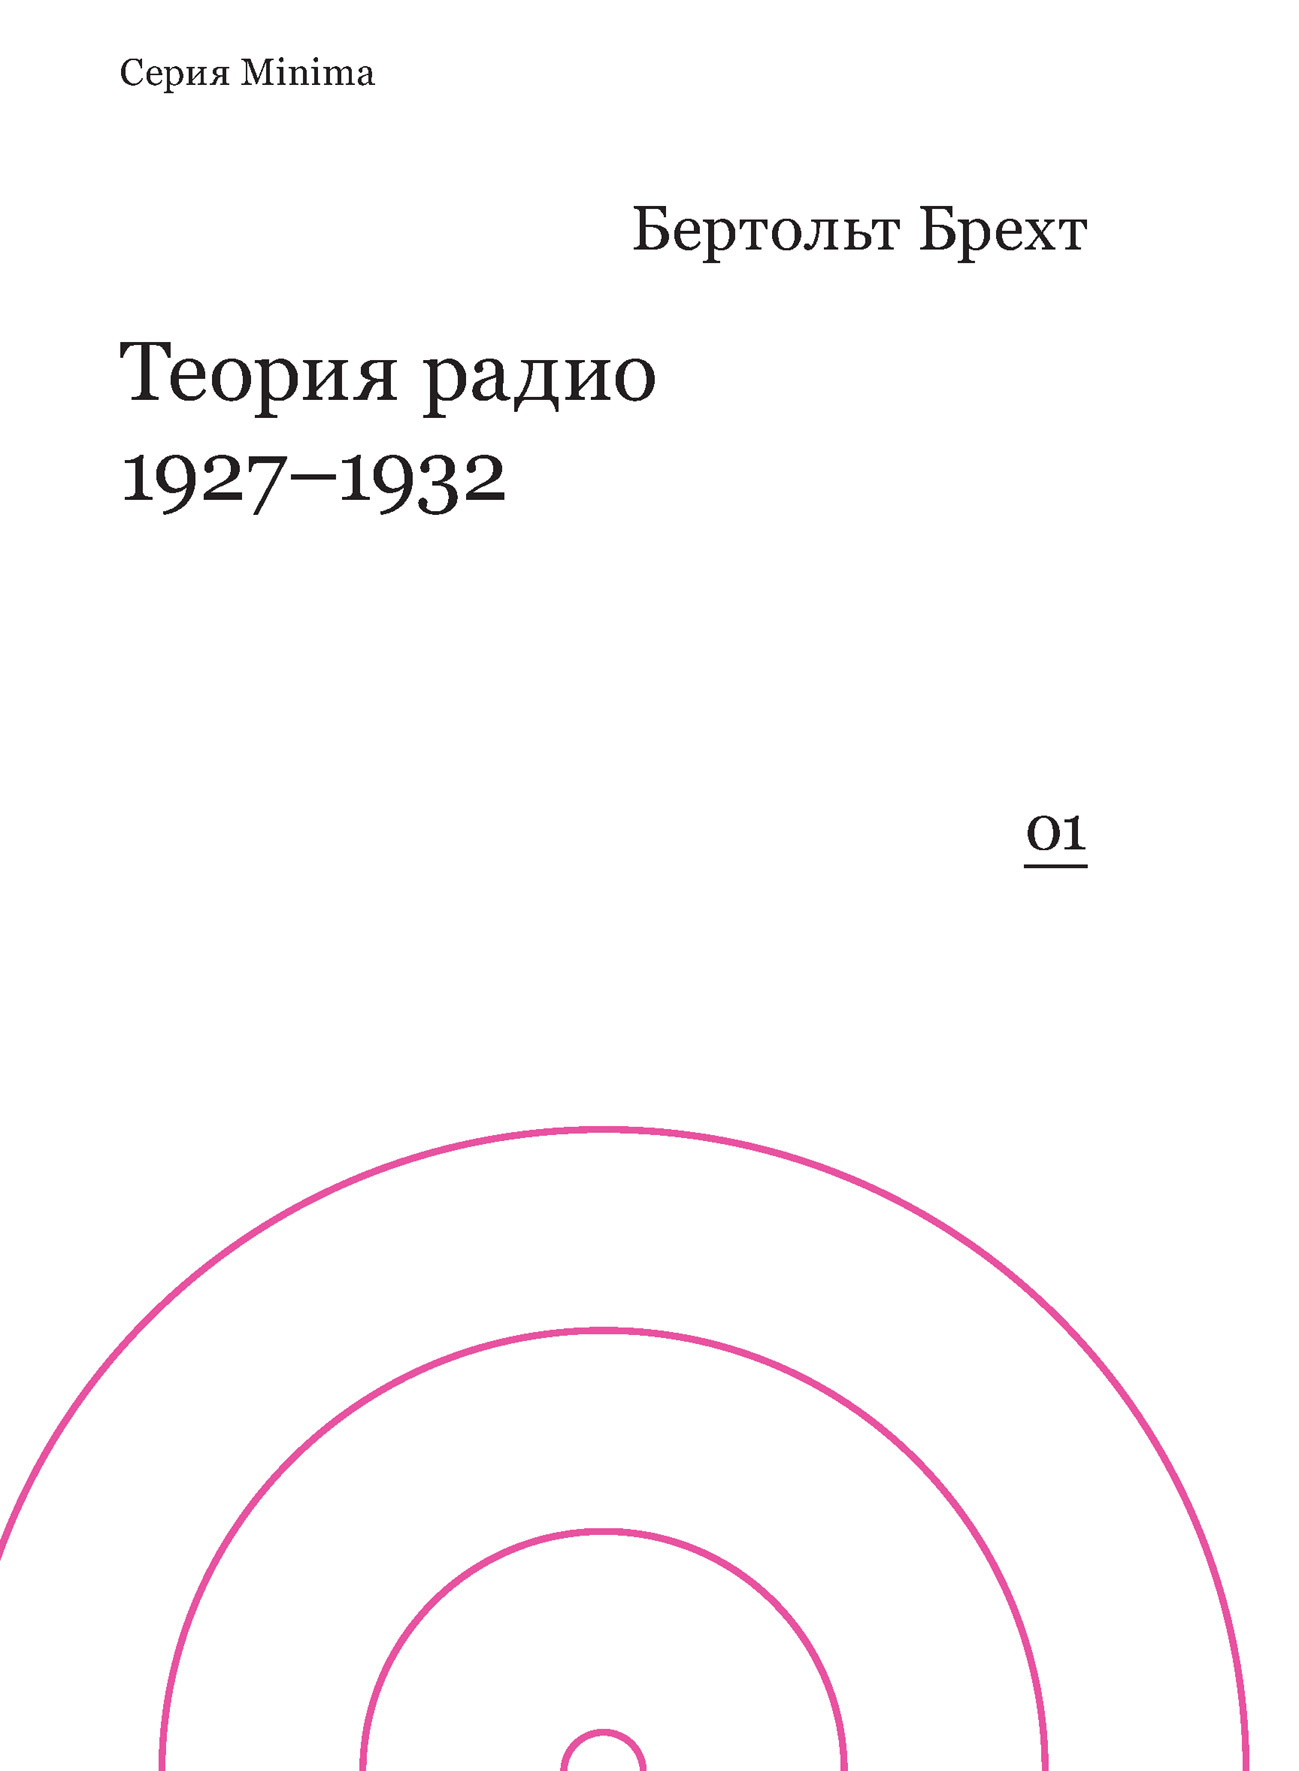 Теория радио. 1927-1932